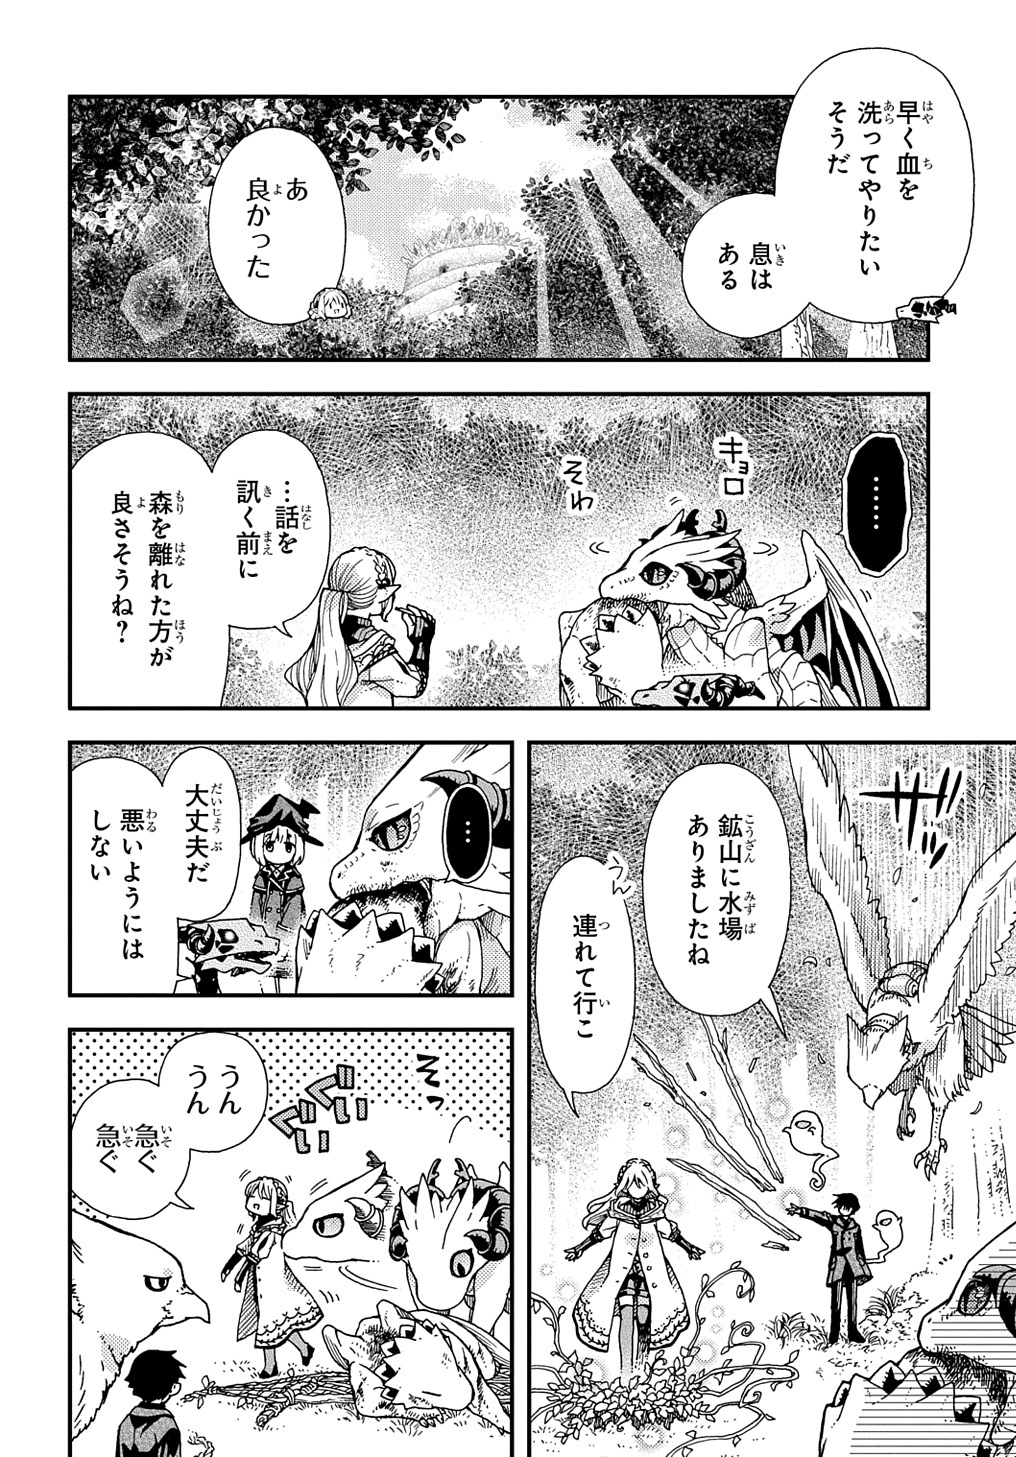 Hone Dragon no Mana Musume - Chapter 29.2 - Page 2